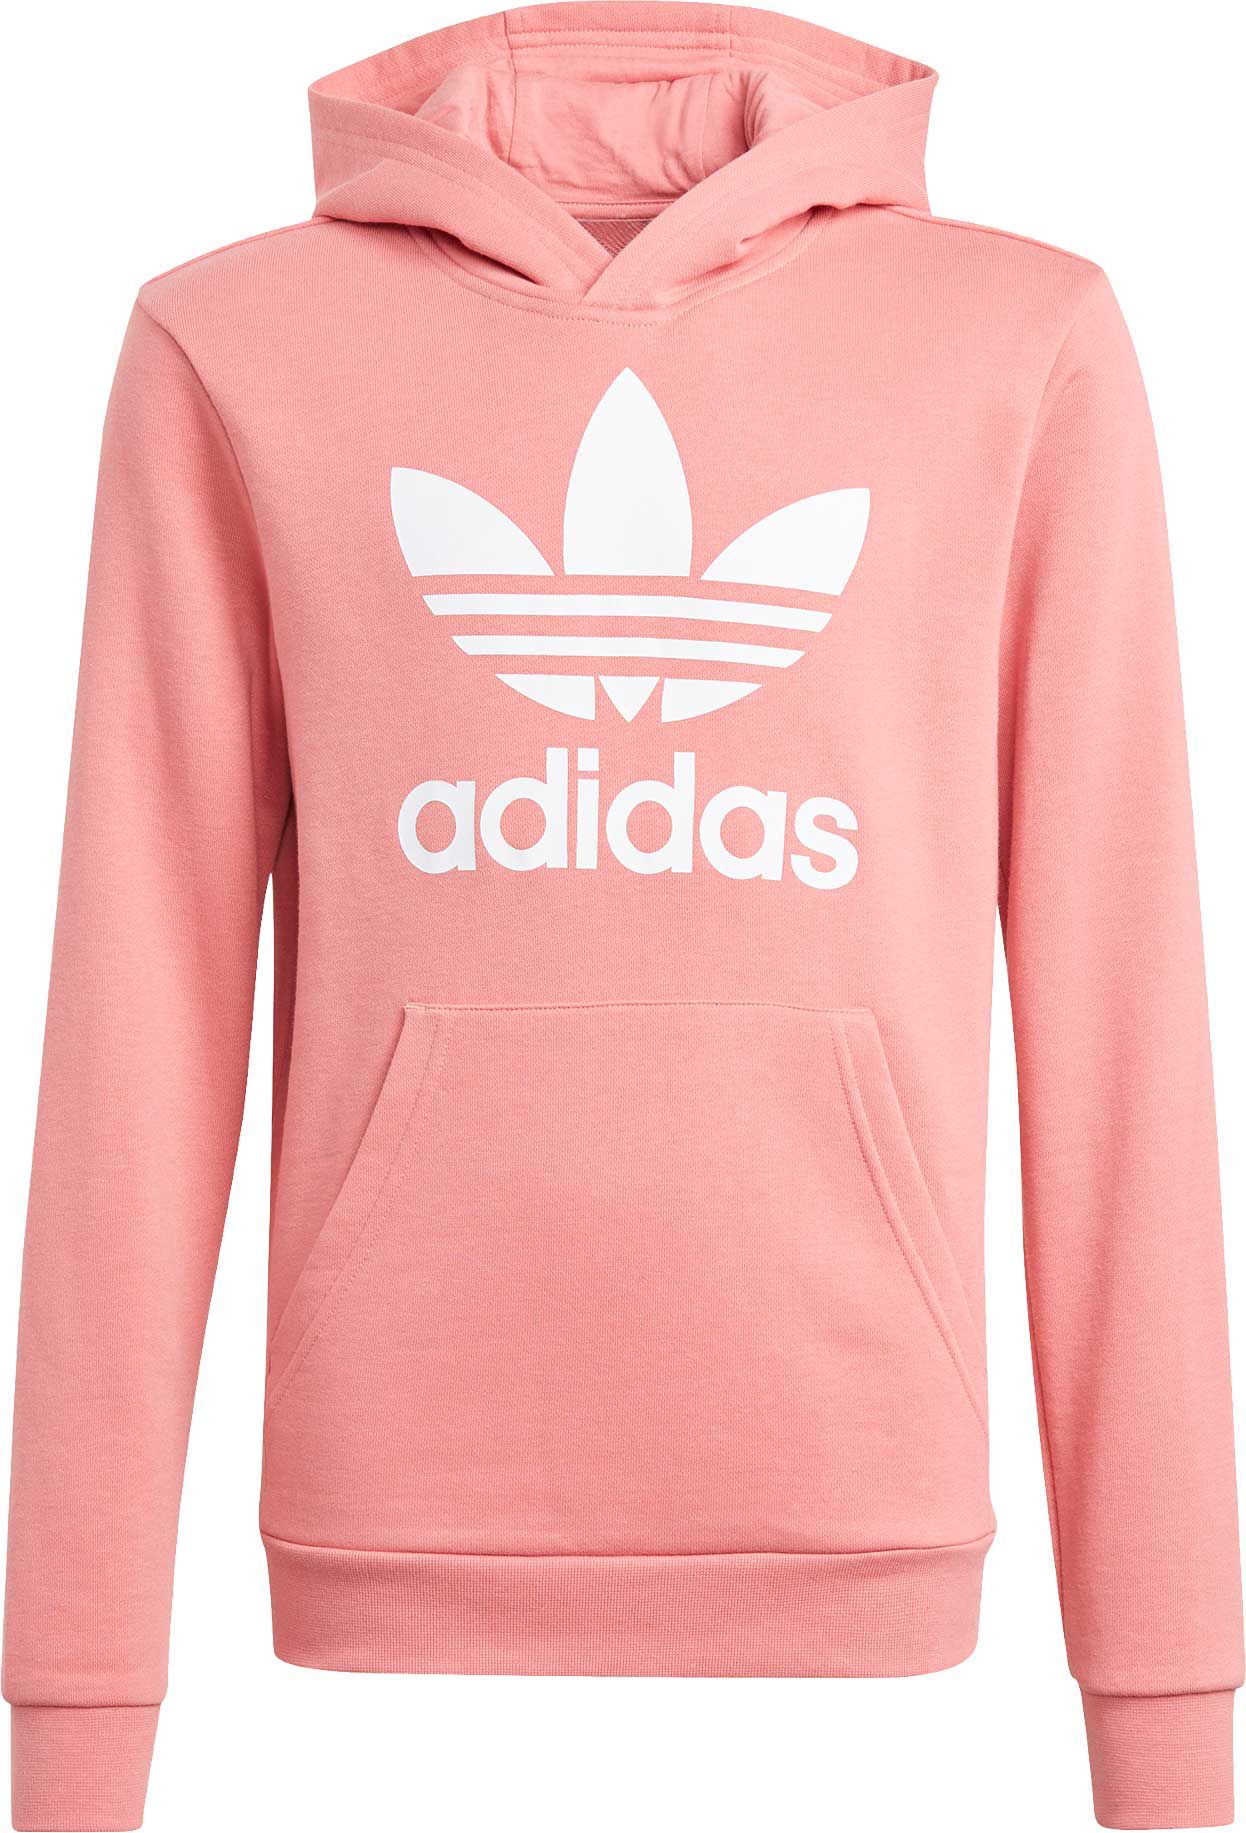 light pink adidas sweatshirt